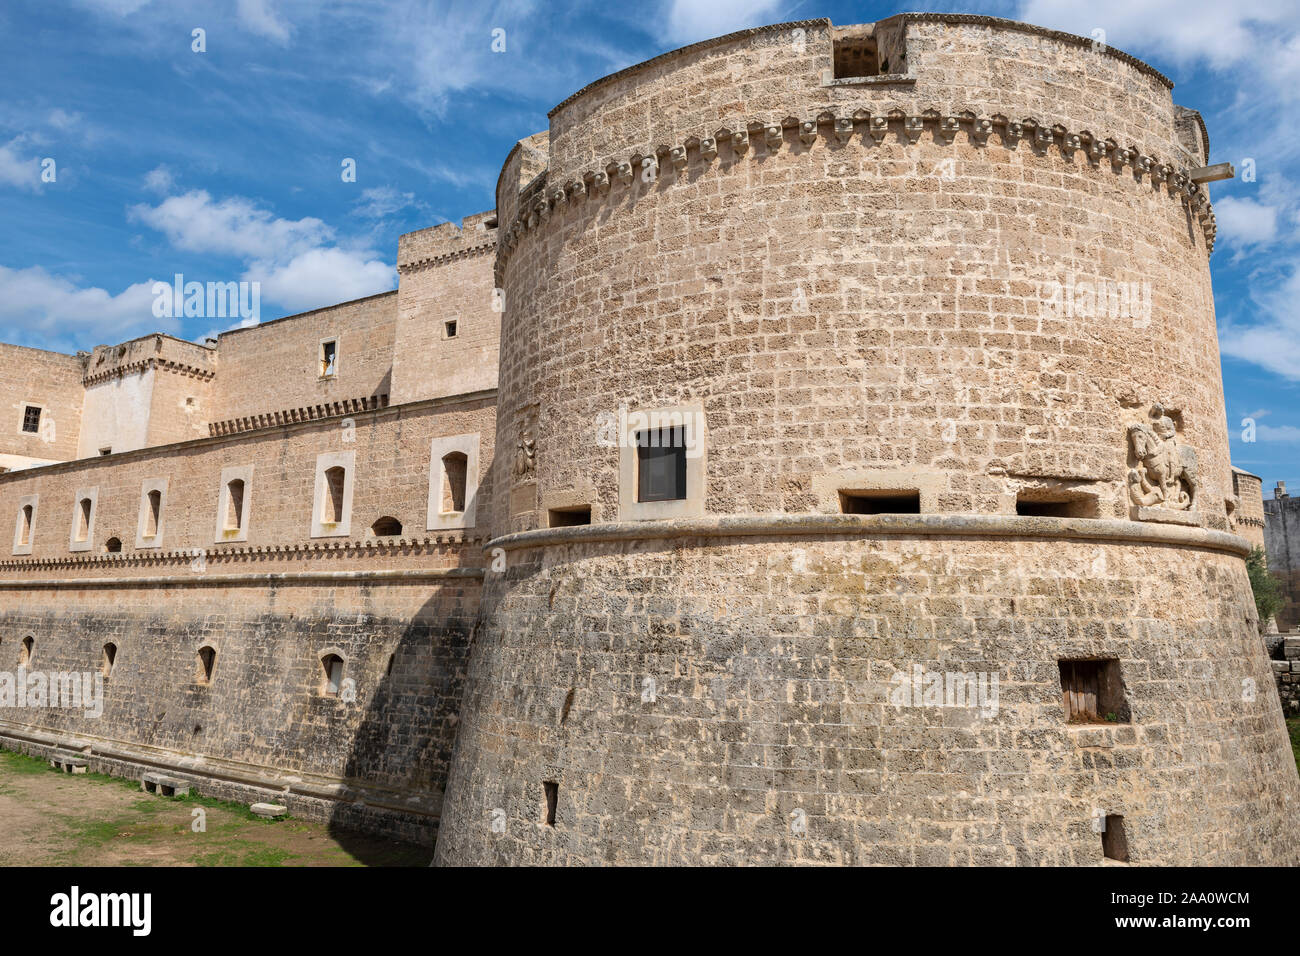 El exterior del castillo de' Monti, en Corigliano d'Otranto, Apulia (Puglia) en el sur de Italia Foto de stock